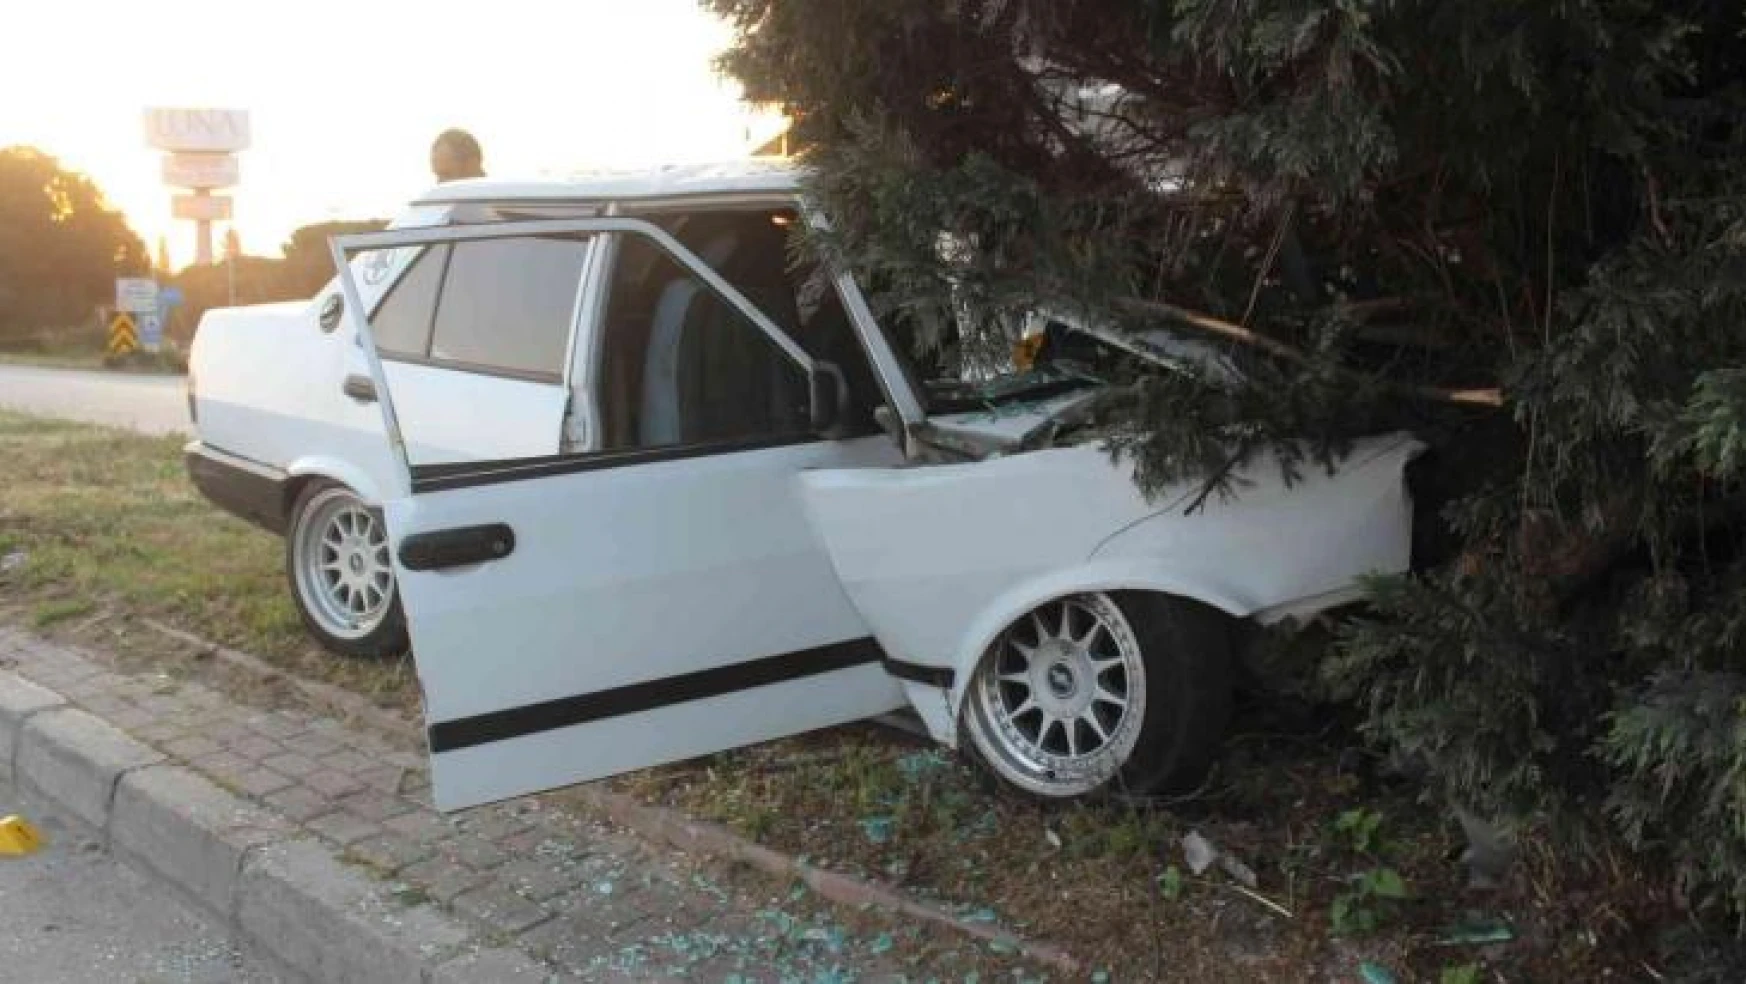 Manisa'da otomobil refüjdeki ağaca çarptı: 1 ölü, 1 ağır yaralı